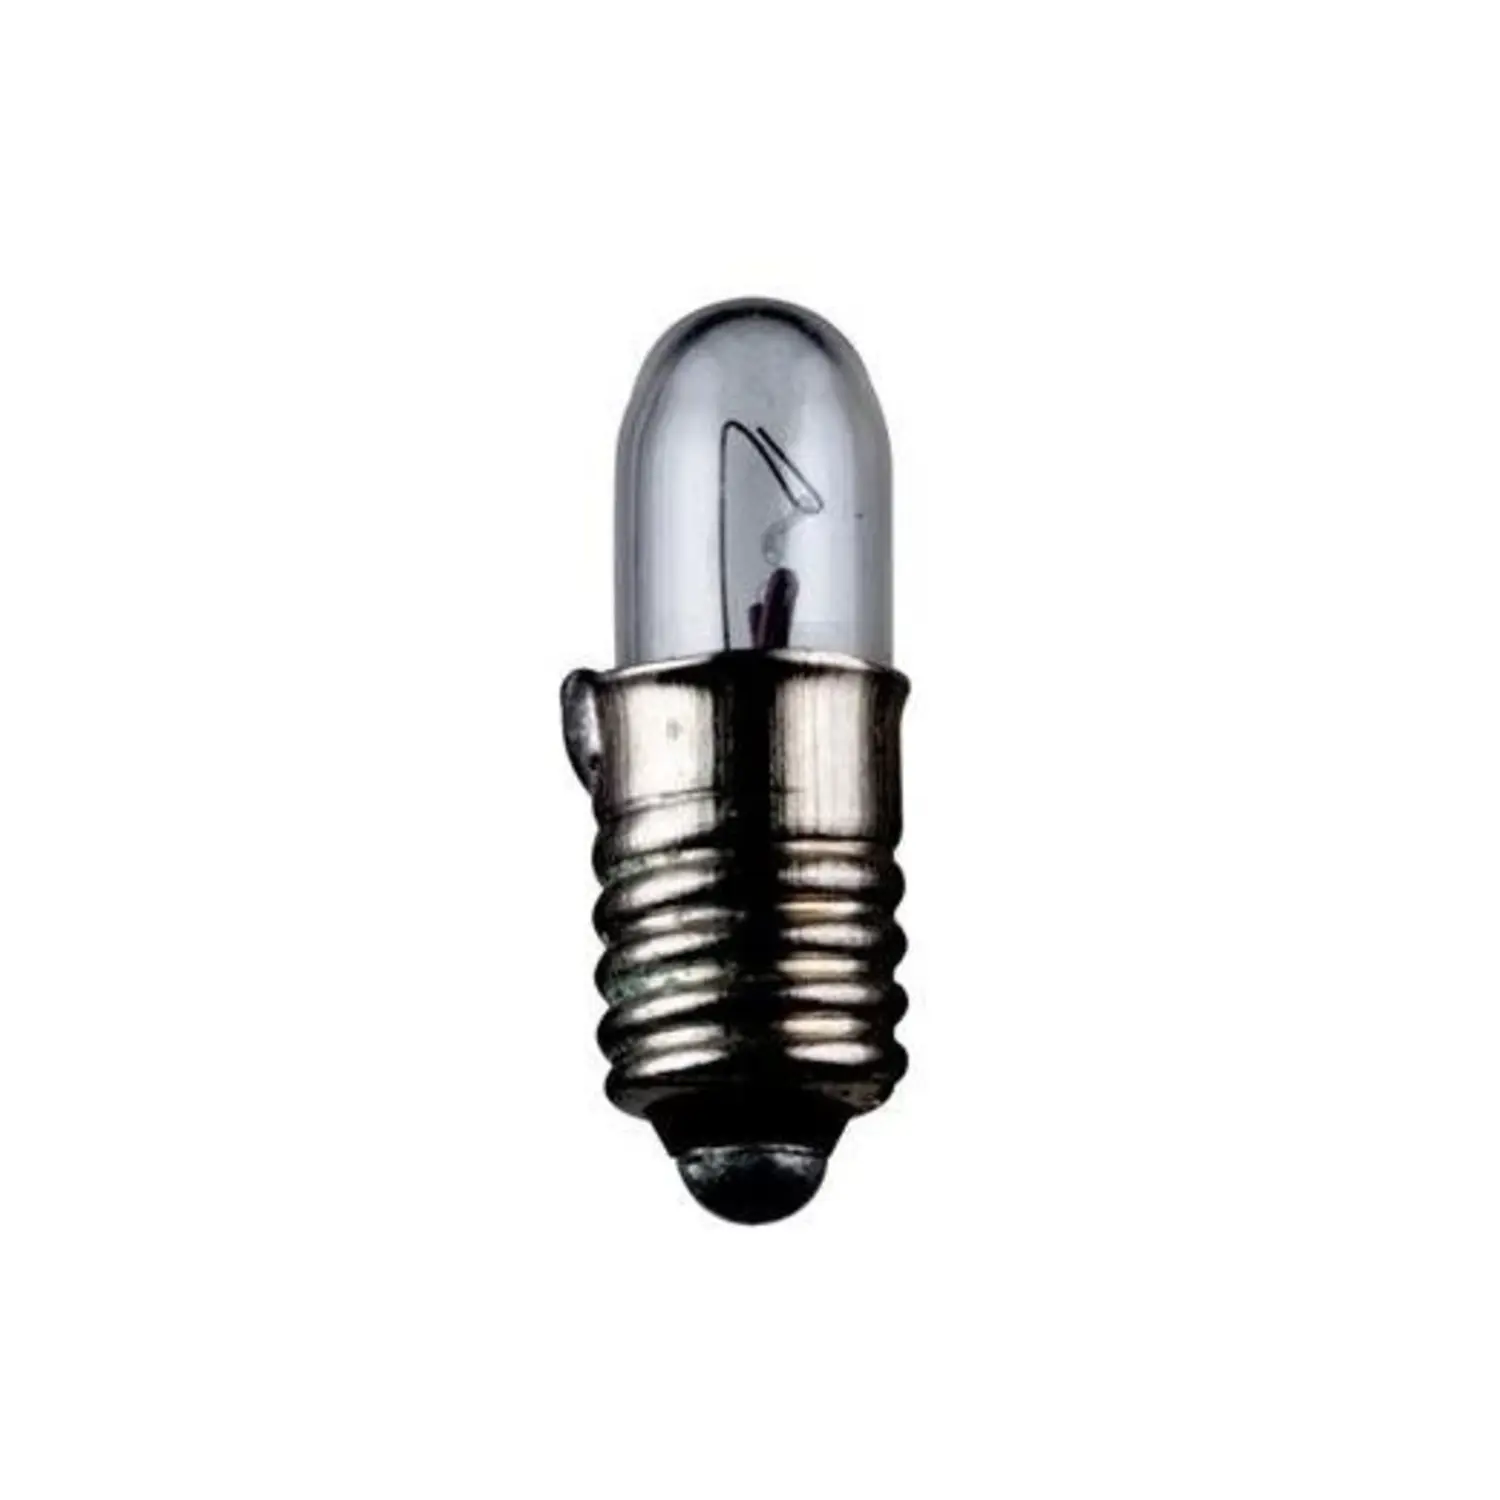 immagine del prodotto lampadina in miniatura modellismo treno e5.5 1,20 watt 24 volt